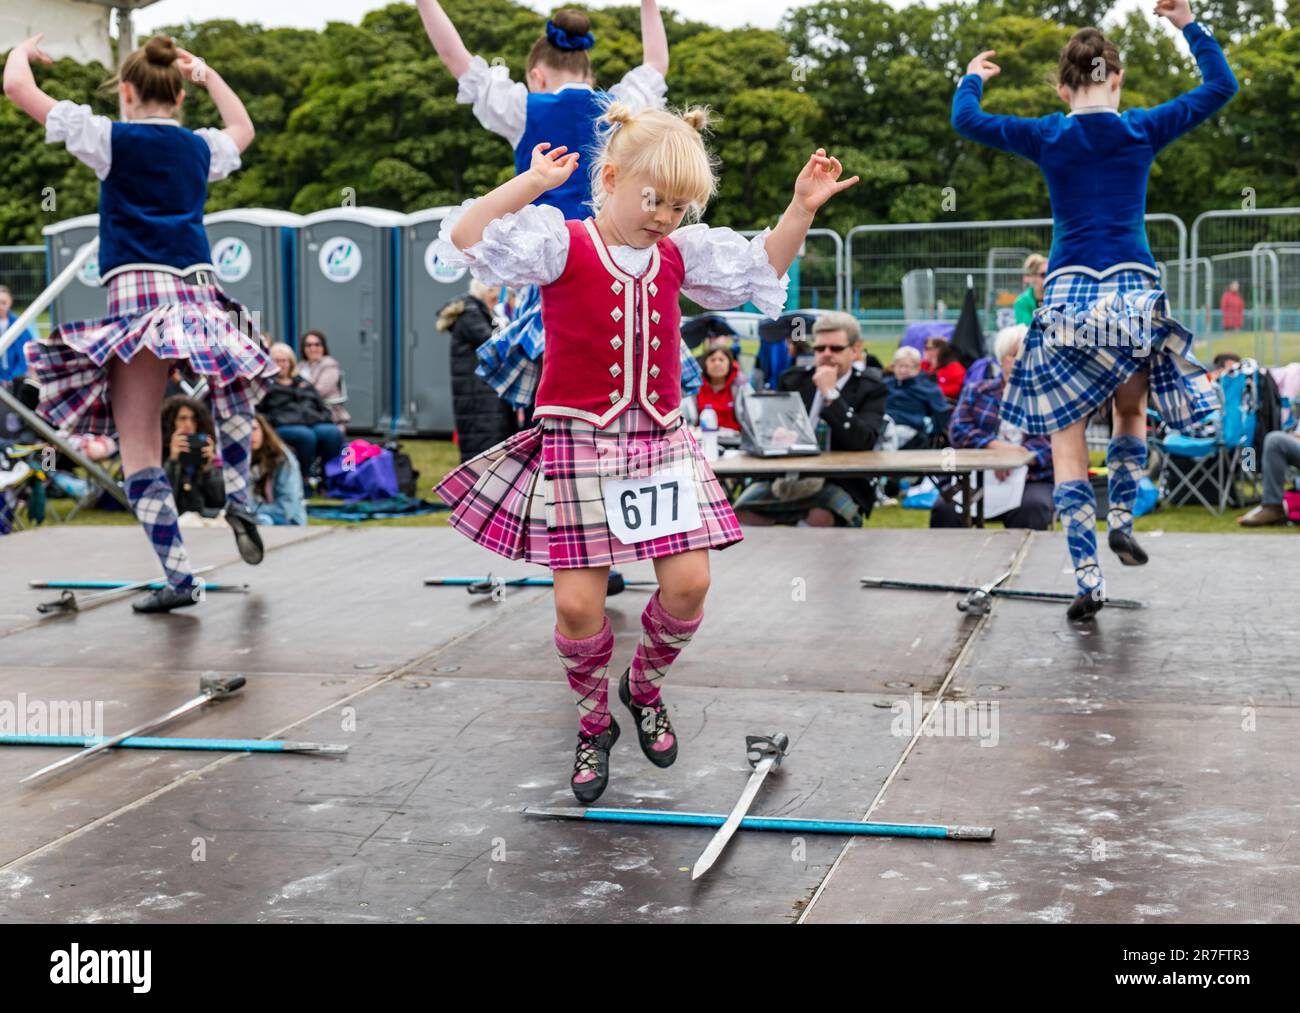 Jeunes filles participant à un événement de danse d'épée dans les hautes terres portant des kilts traditionnels écossais, Highland Games, North Berwick, Écosse, Royaume-Uni Banque D'Images